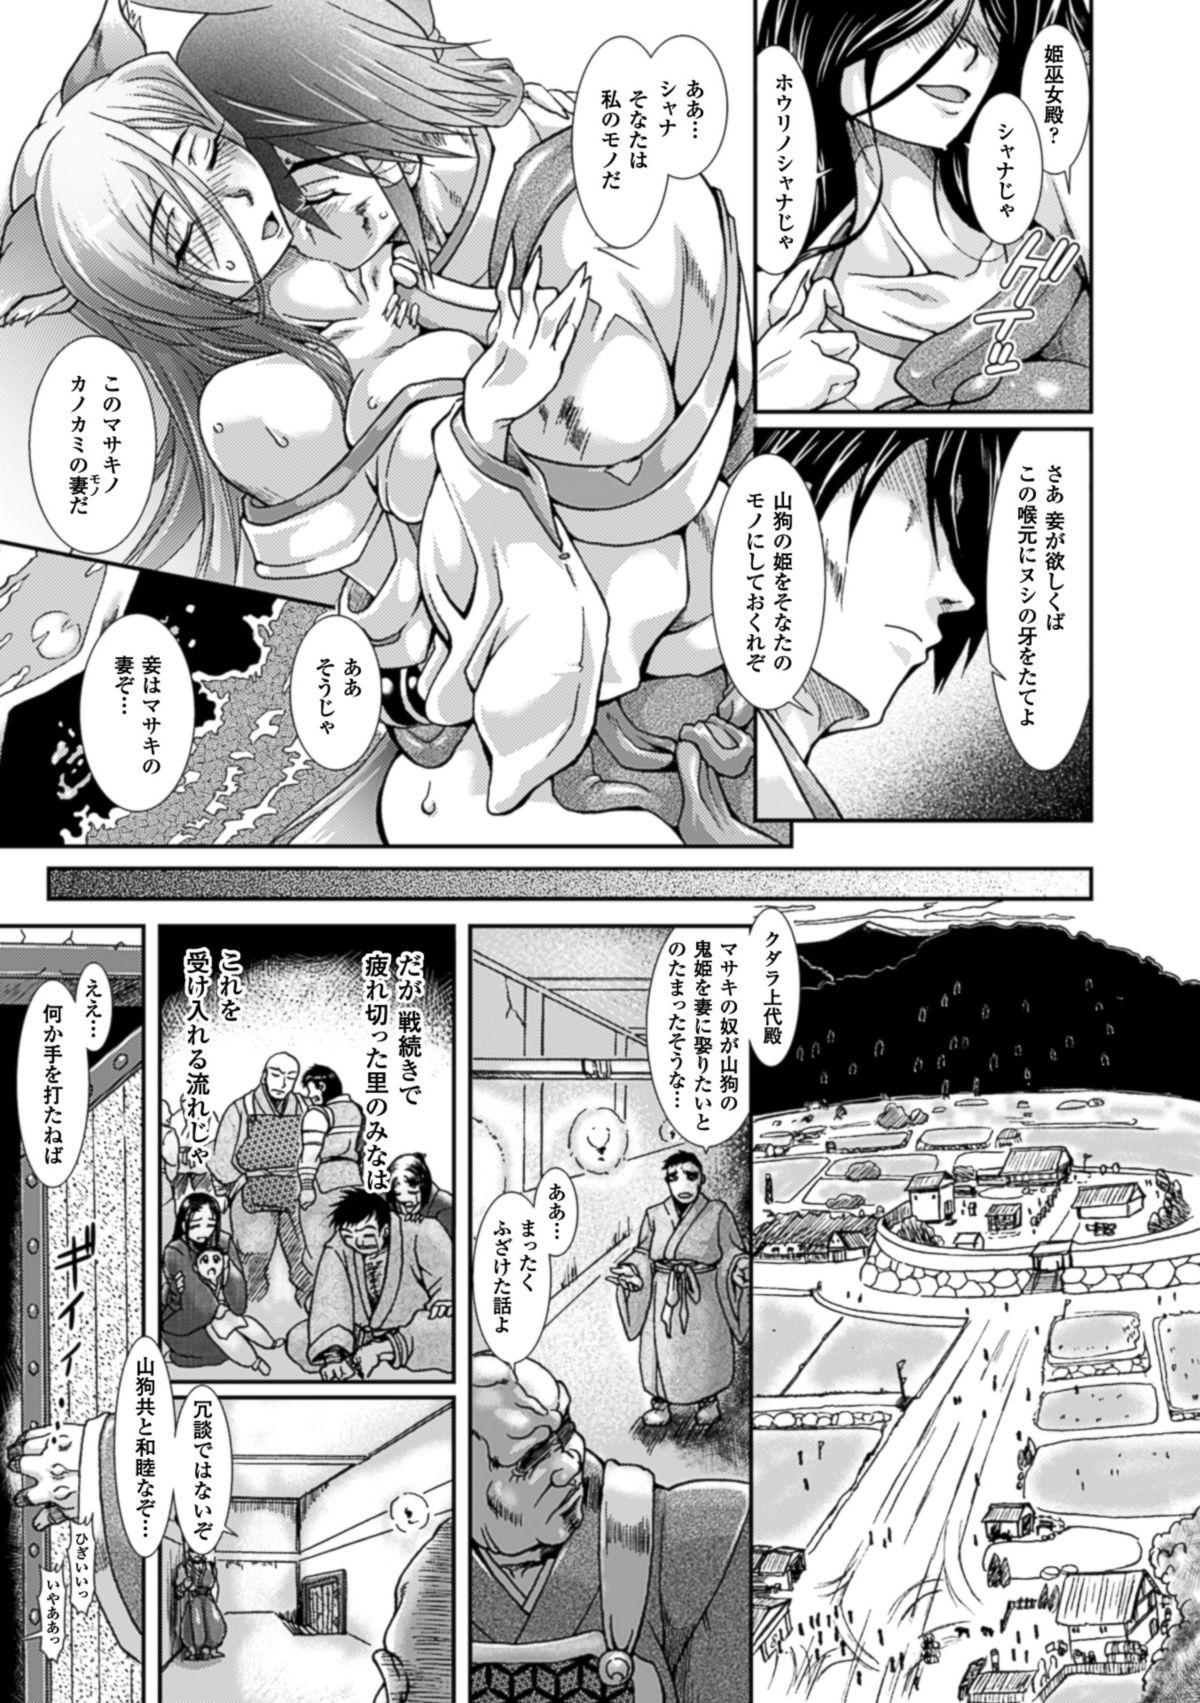 Ballbusting Shokutai no Yoru Ingoku no Chigiri Strap On - Page 8